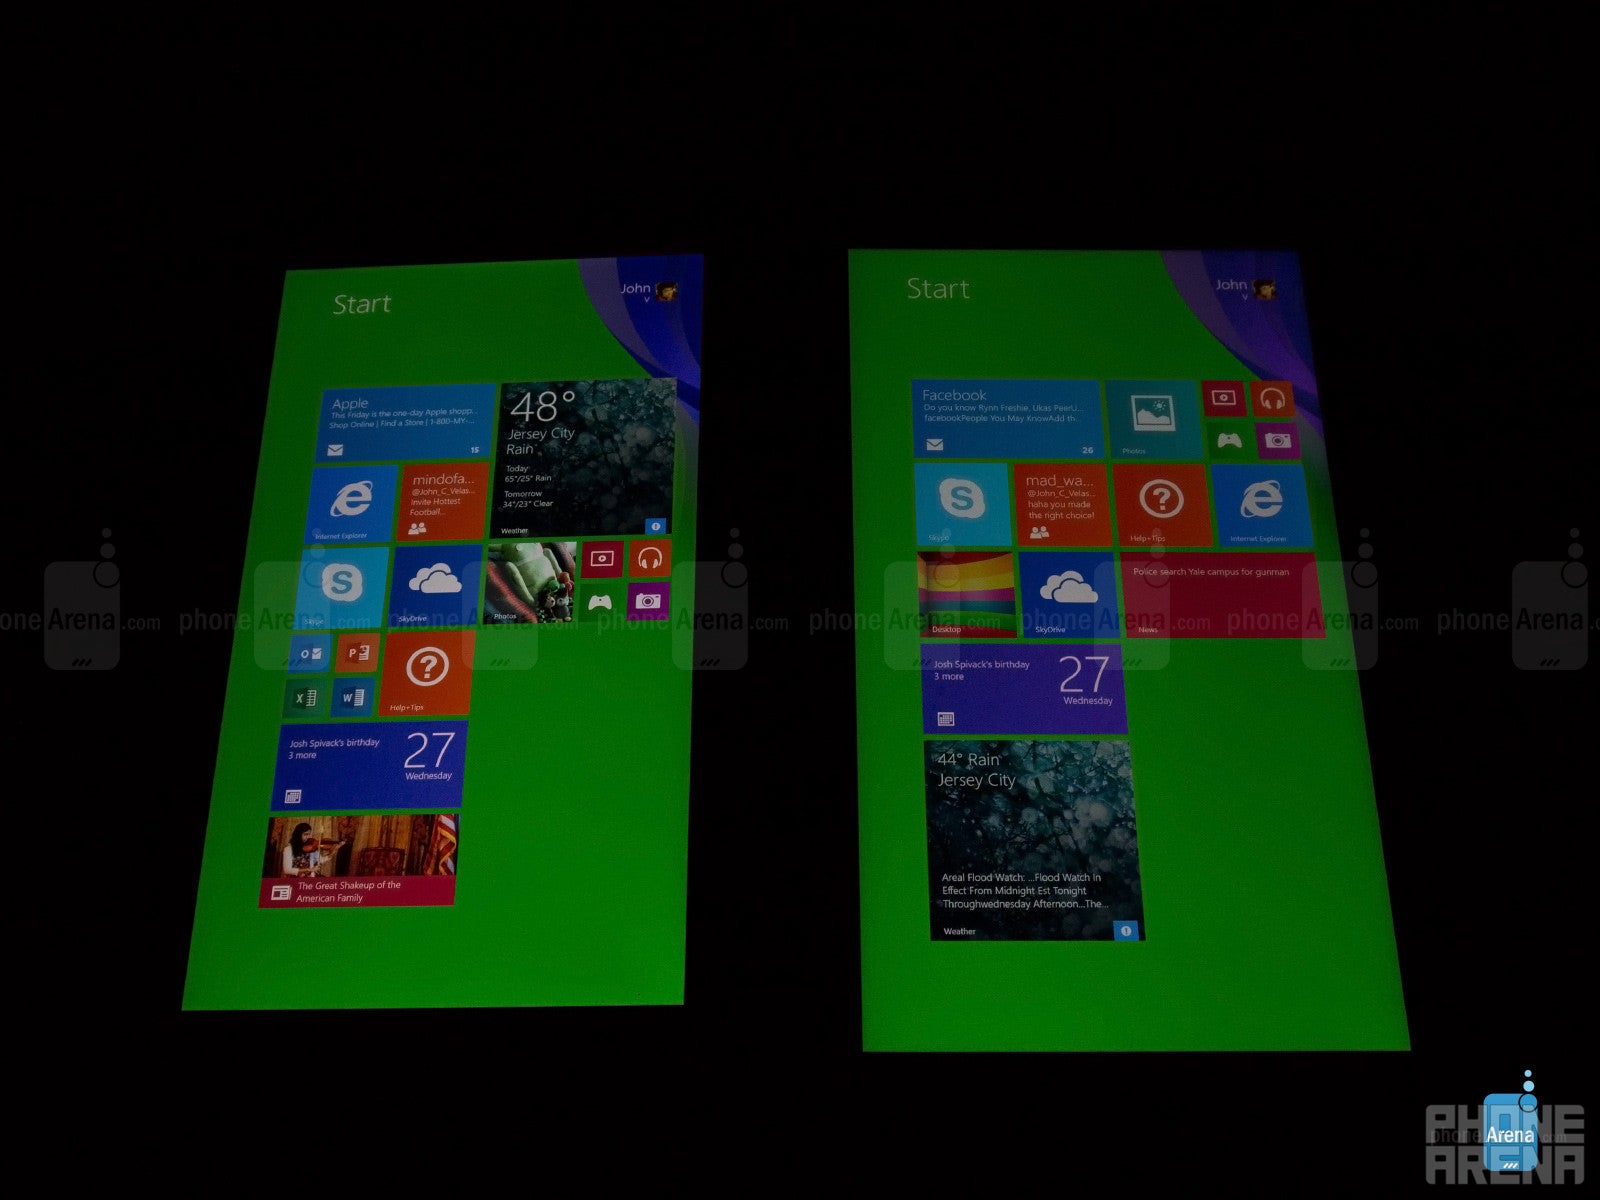 Nokia Lumia 2520 vs Microsoft Surface 2